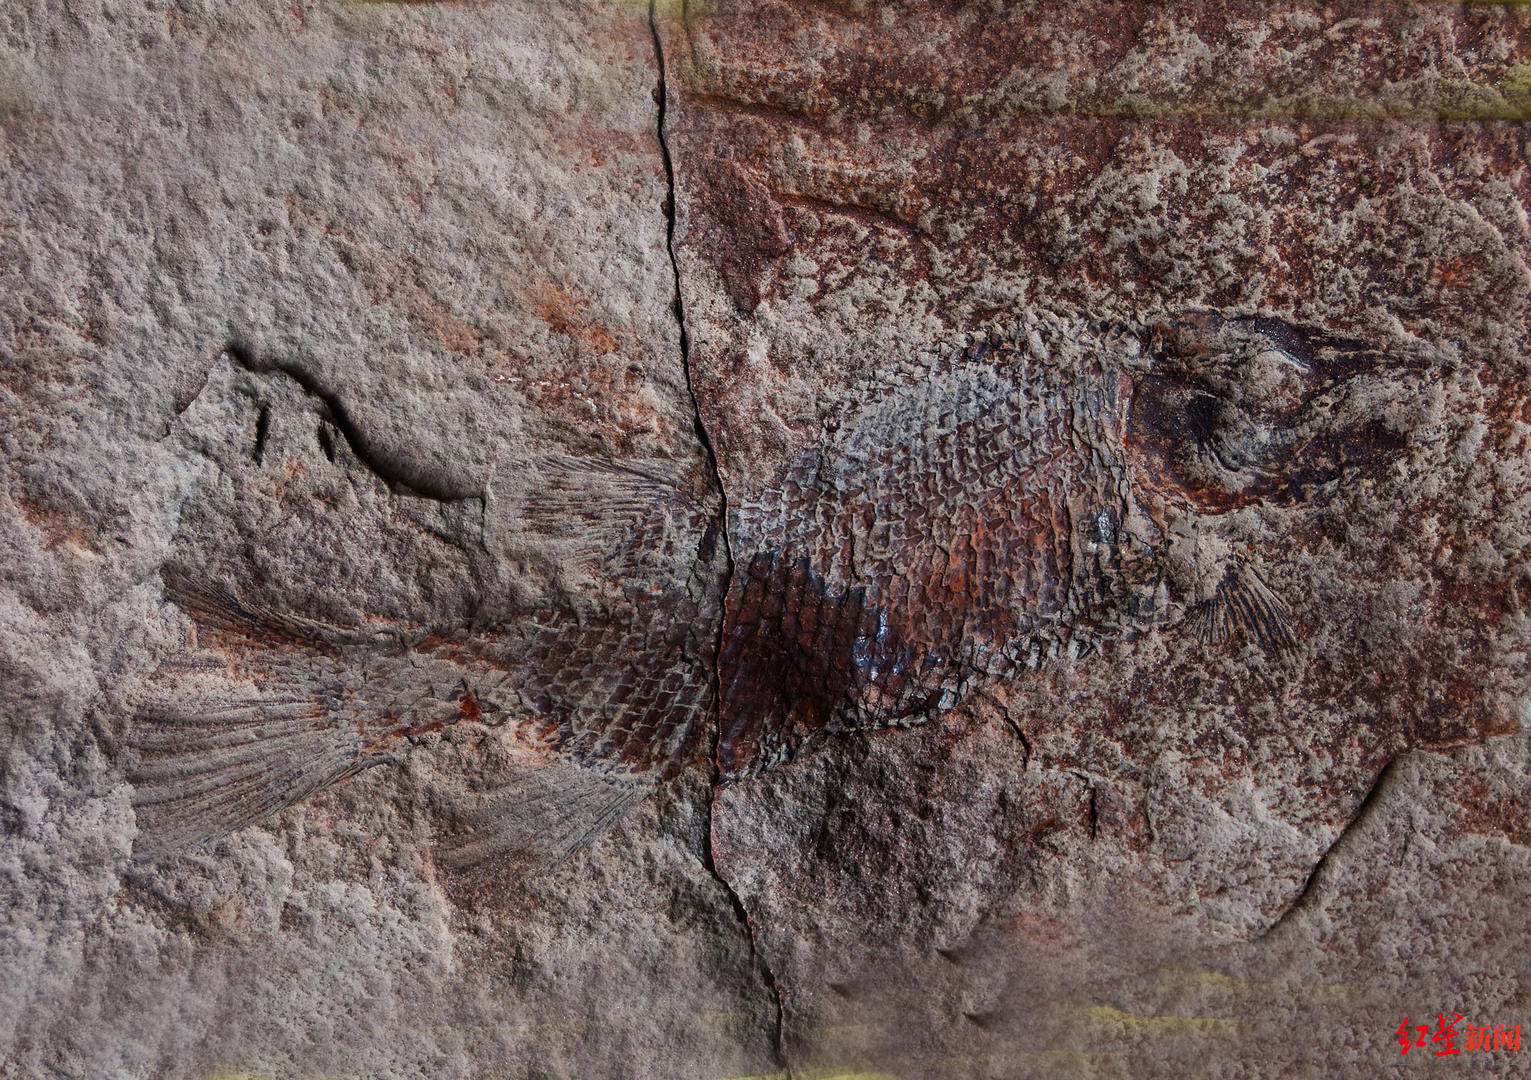 四川丹棱幸福古村发现远古鱼化石 初步判定距今约上亿年